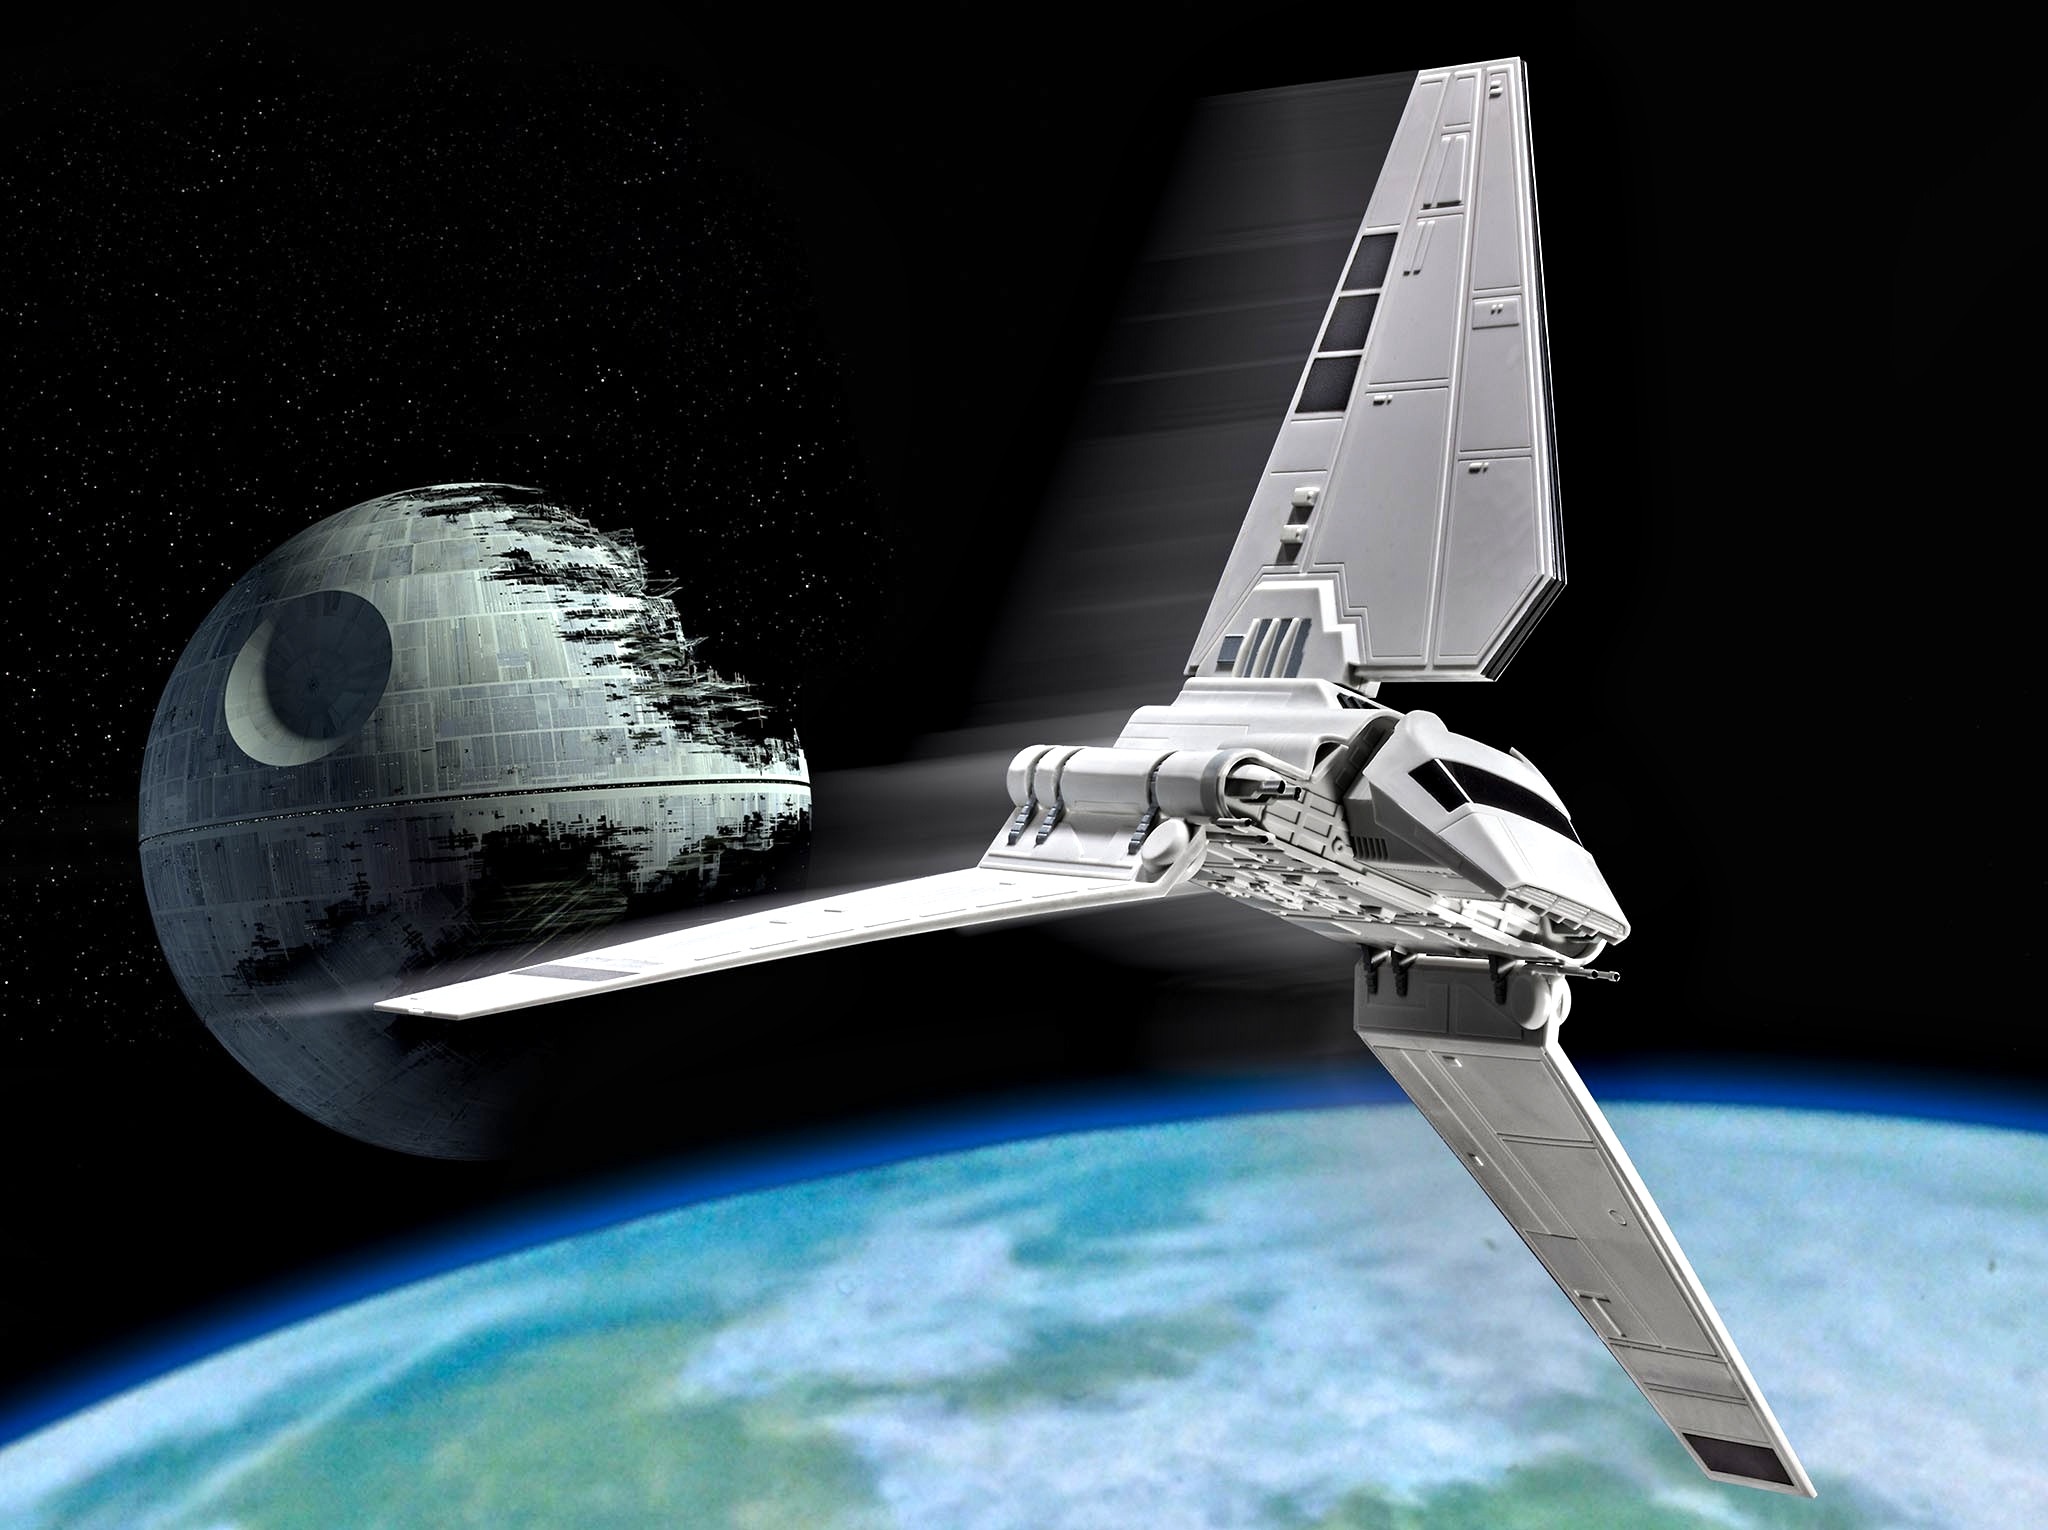 Star Wars Lambda Class T 4a Shuttle - HD Wallpaper 